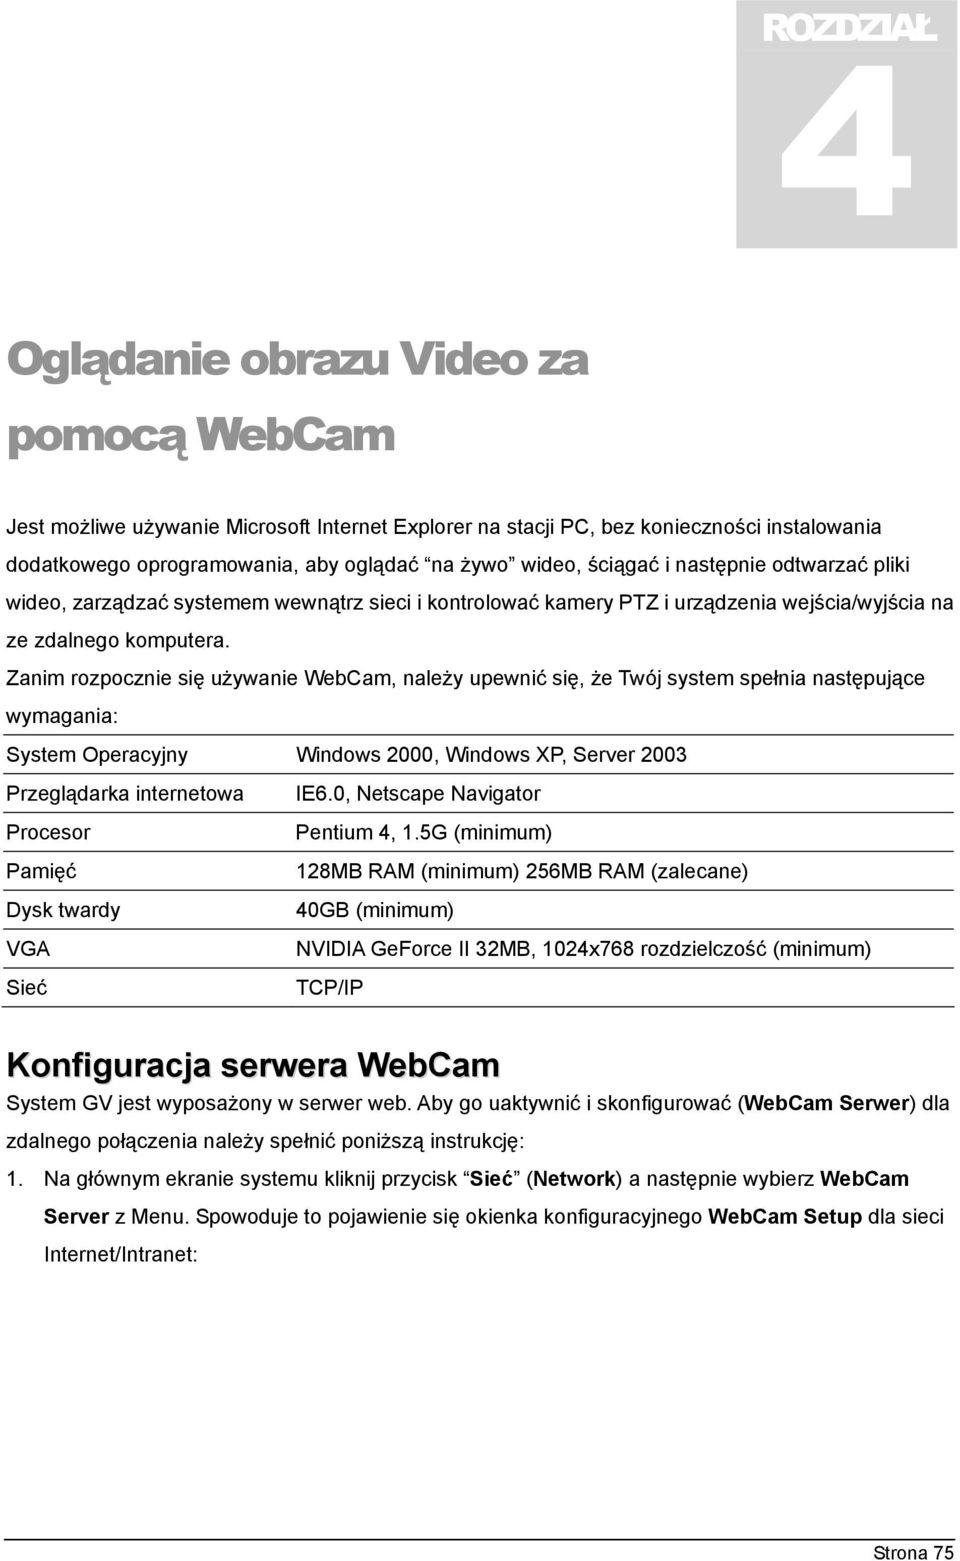 Zanim rozpocznie się używanie WebCam, należy upewnić się, że Twój system spełnia następujące wymagania: System Operacyjny Windows 2000, Windows XP, Server 2003 Przeglądarka internetowa IE6.